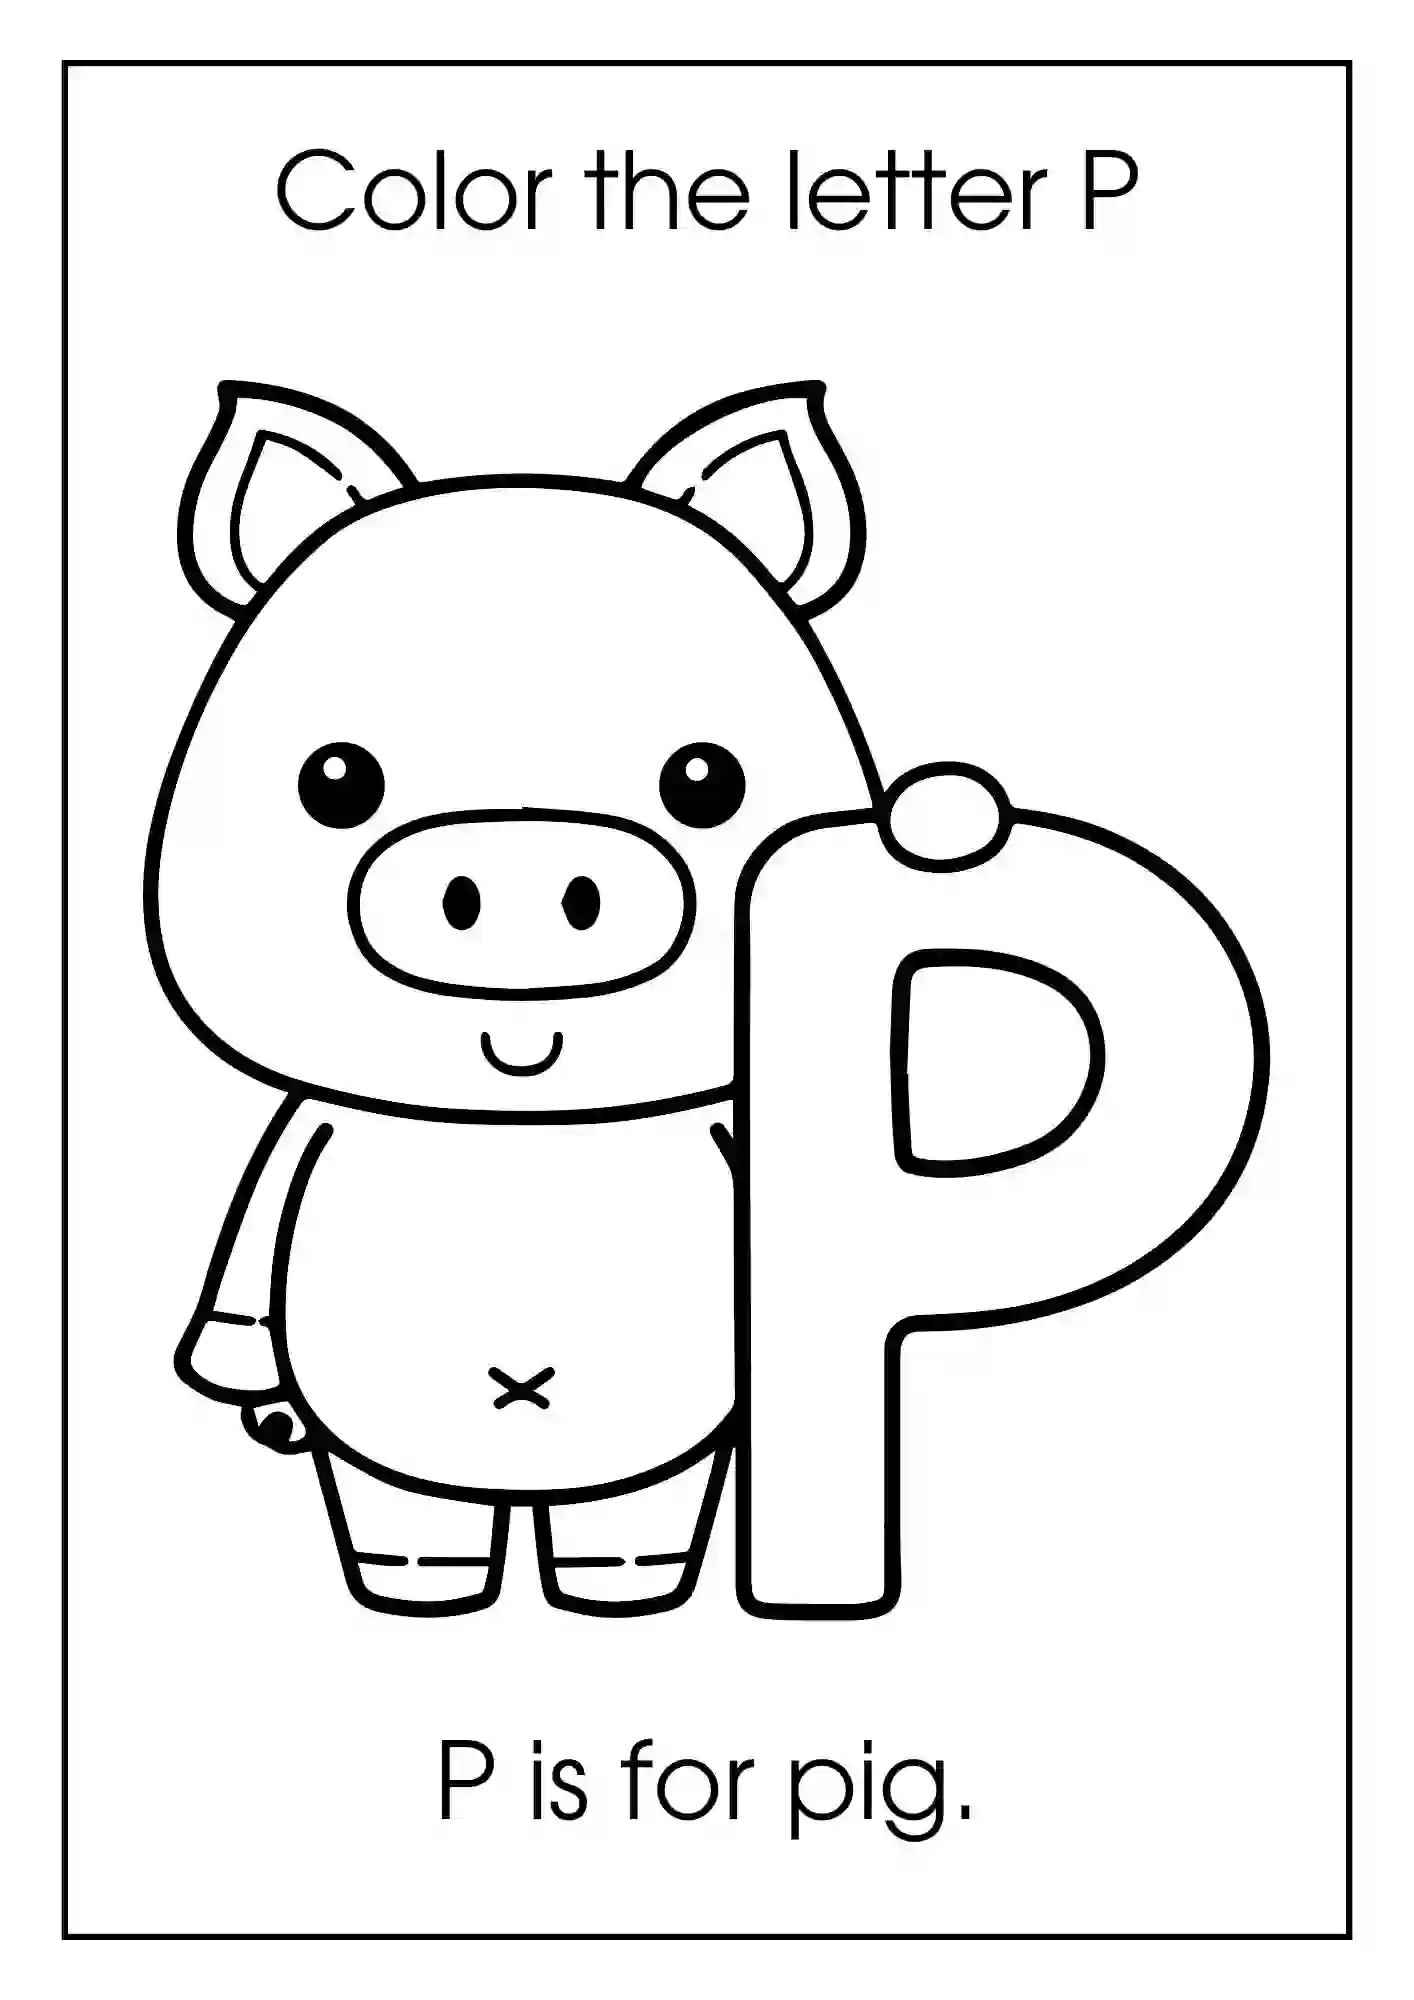 Animal Alphabet Coloring Worksheets For Kindergarten (Letter p with pig)